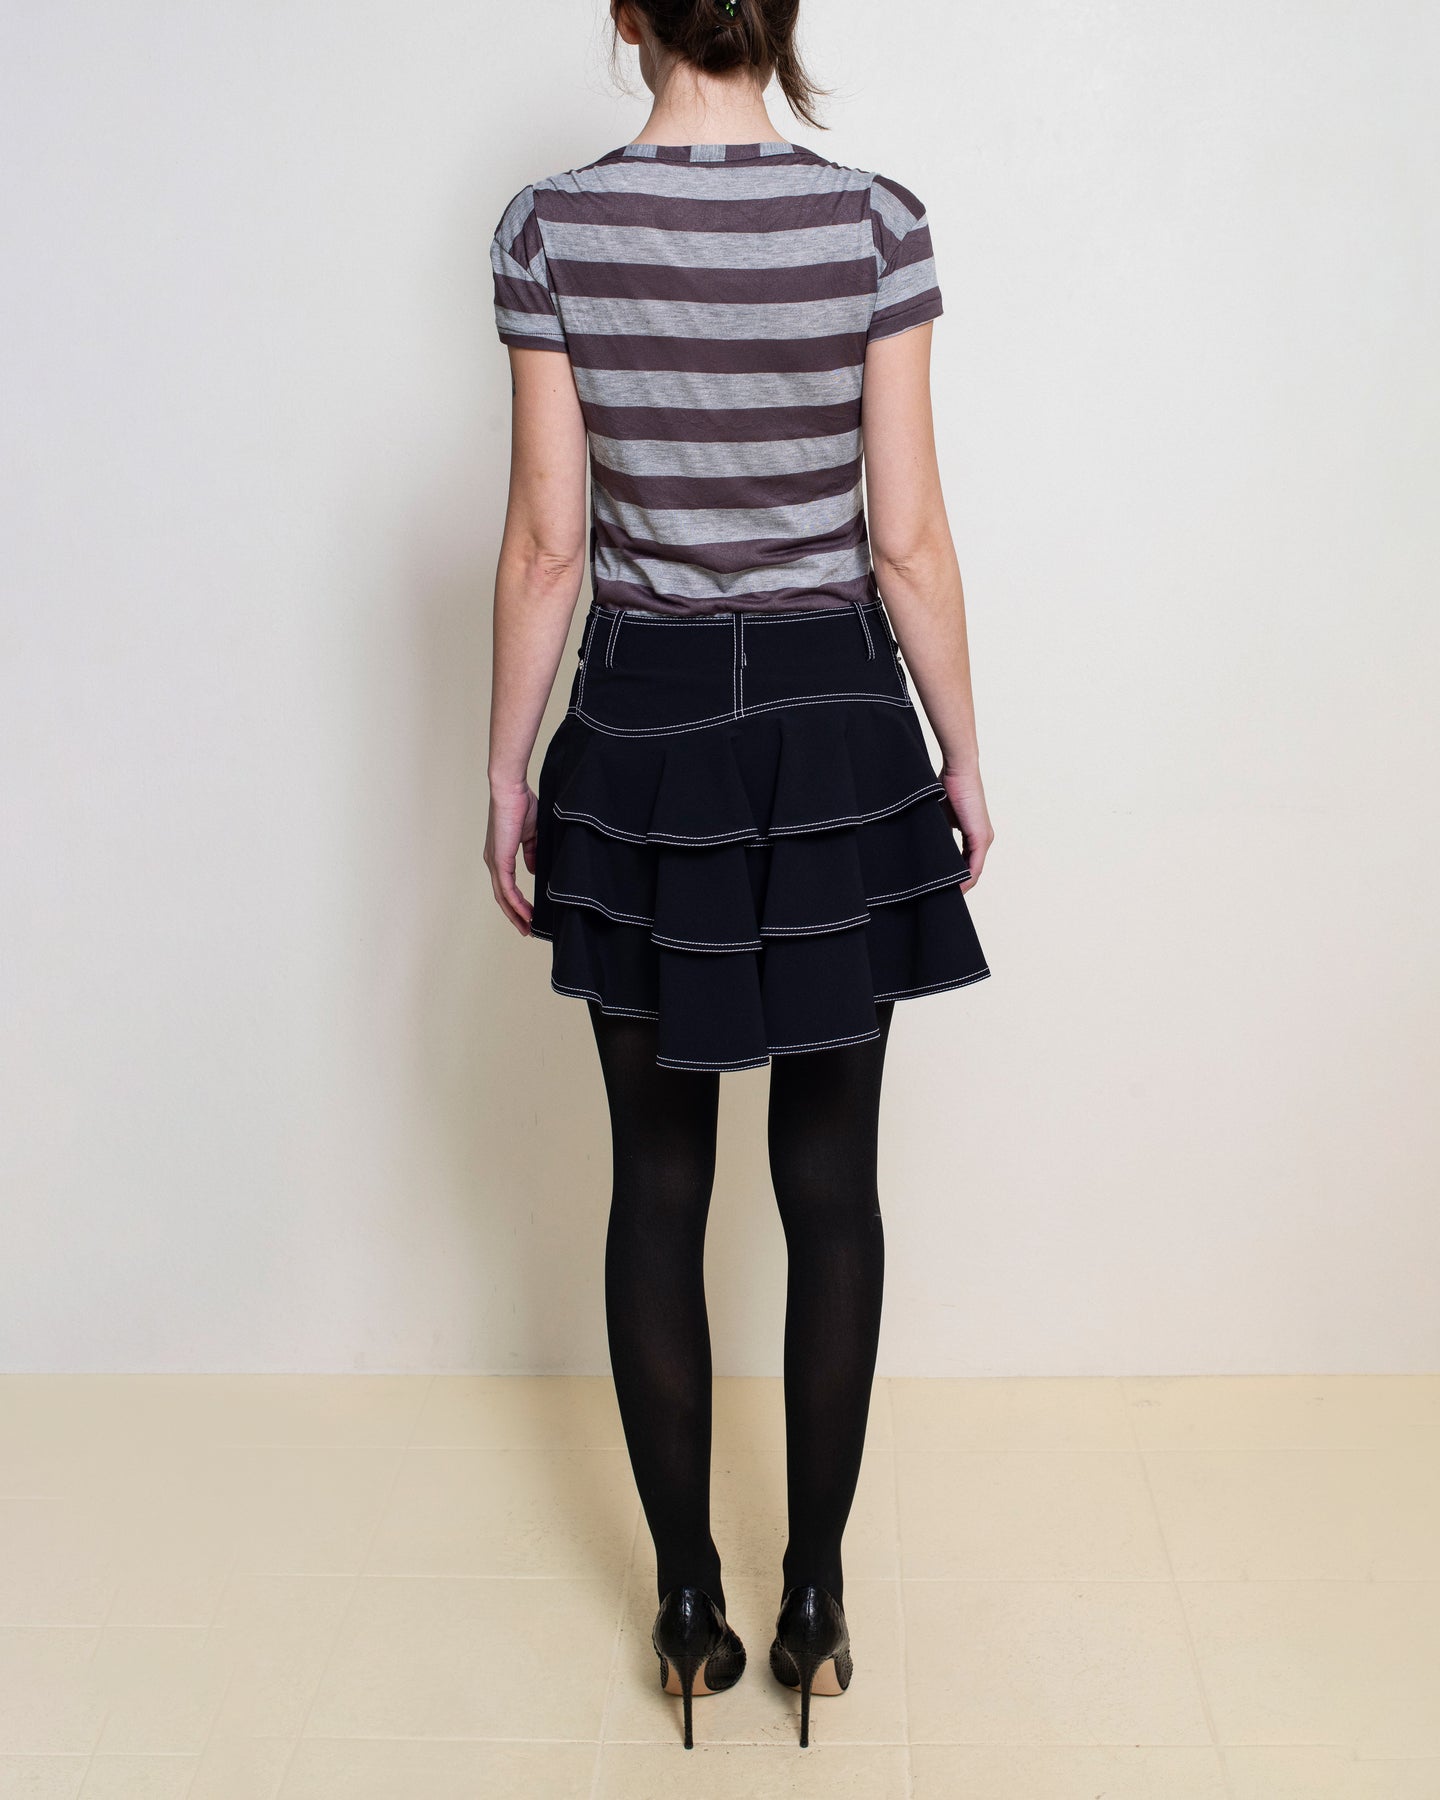 Priscavera - Black Ruffle Mini Skirt